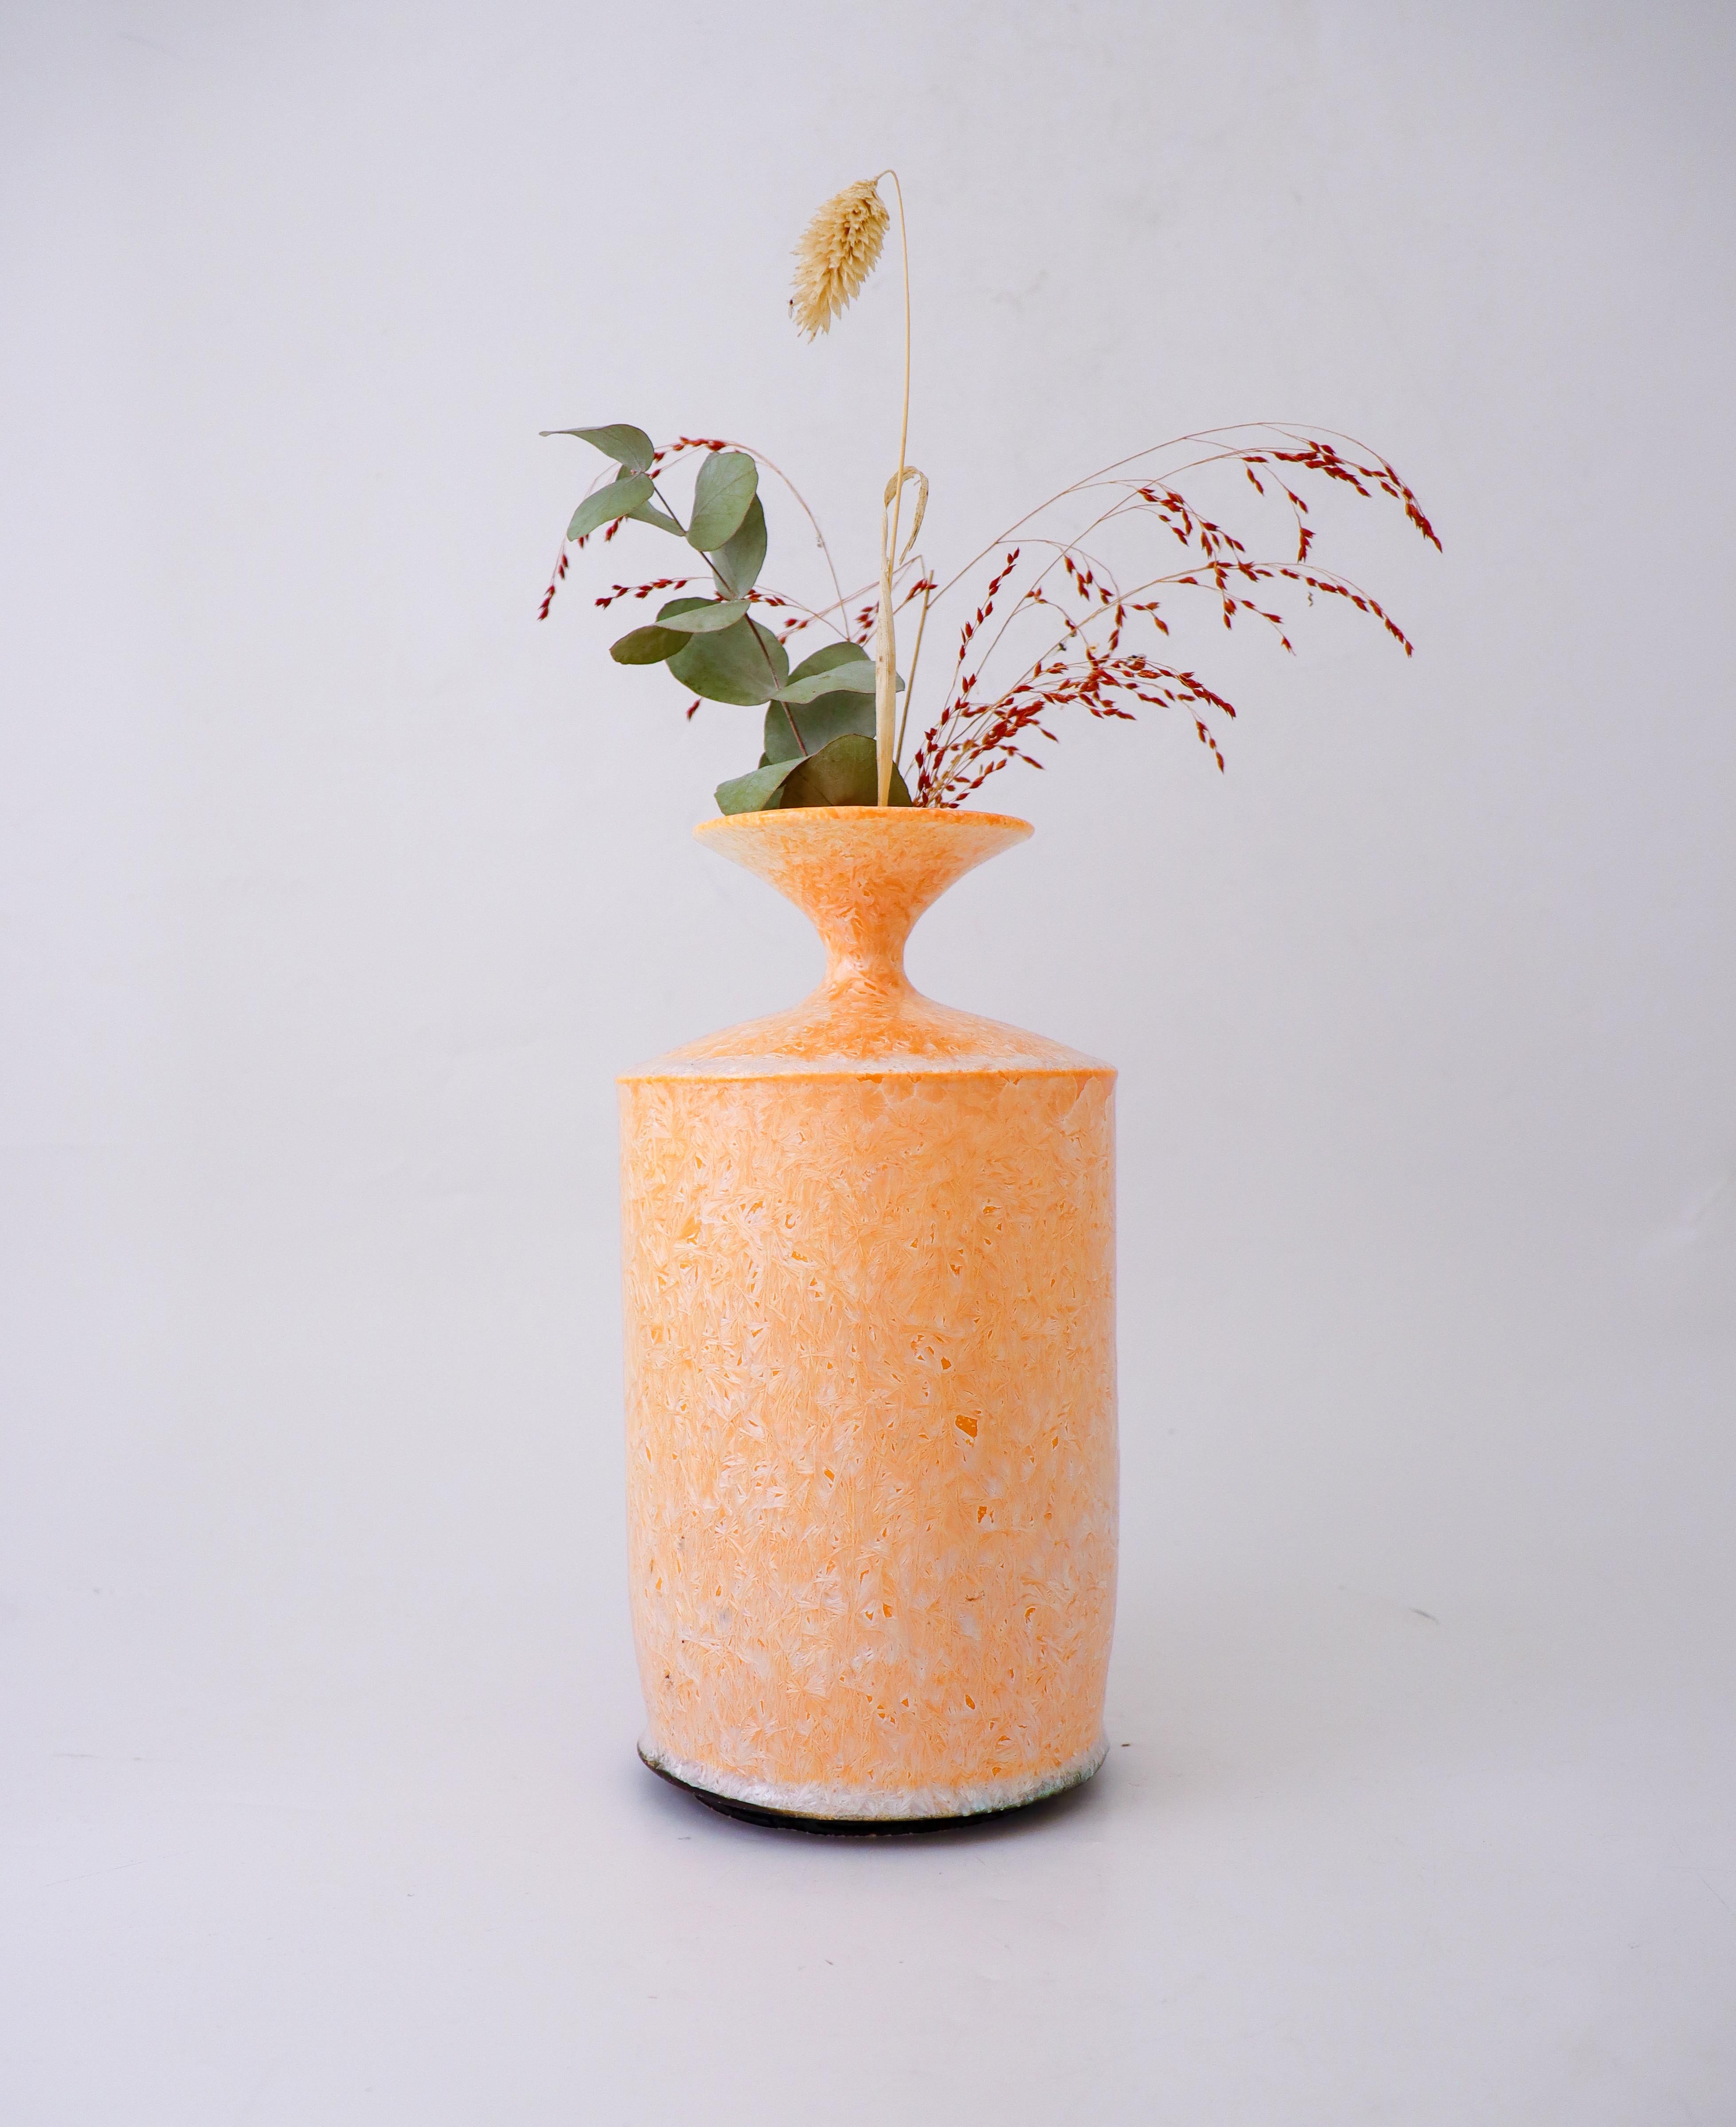 Ce magnifique vase contemporain en céramique d'Isak Isak/One présente un étonnant motif abstrait dans des tons abricot. Le vase mesure 25 cm de haut et est fabriqué à la main avec une finition brillante. La signature de l'artiste est incisée sur le